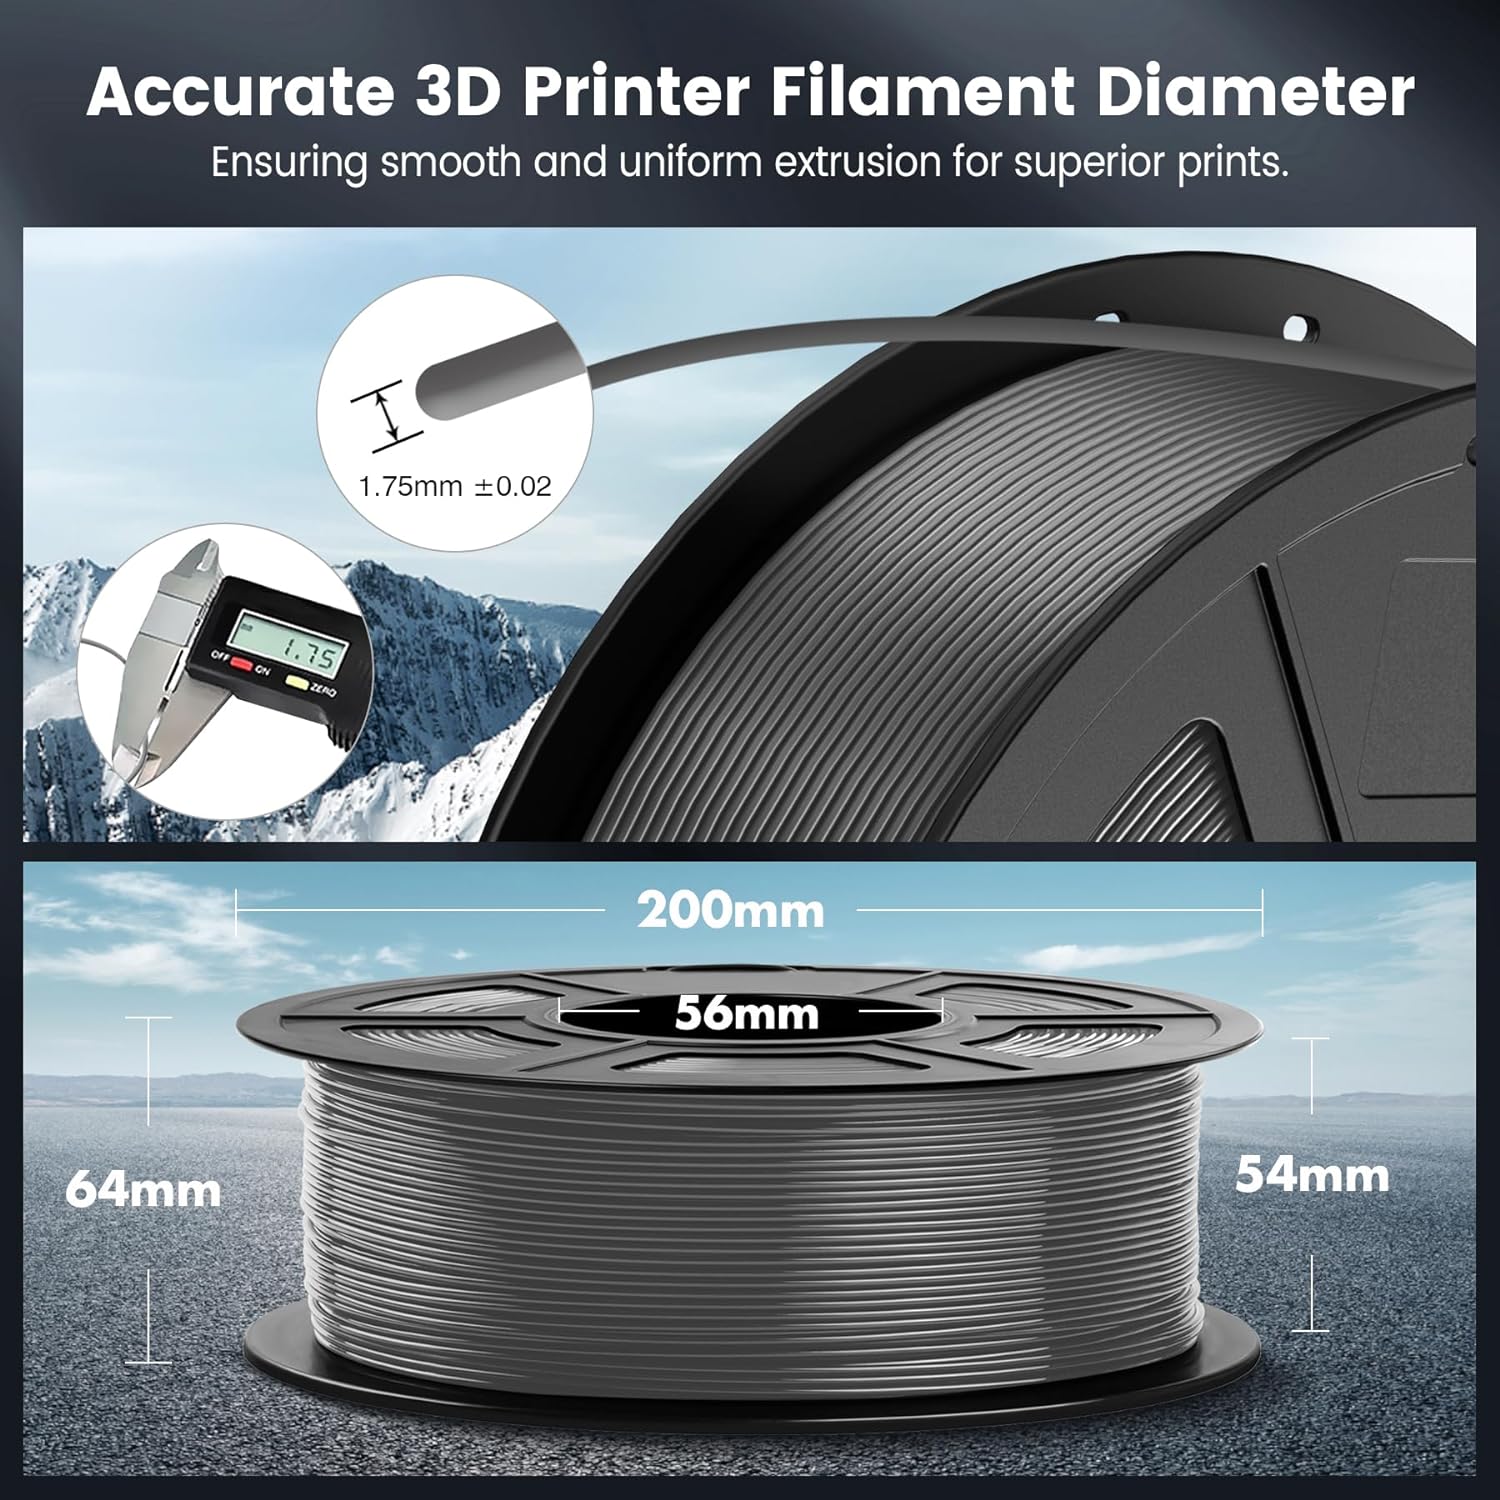 sunlu-pla-3d-printer-filament-pla-filament-175mm-neatly-wound-pla-3d-printing-filament-175mm-dimensional-accuracy-002-mm-4 SUNLU PLA 3D Printer Filament Review